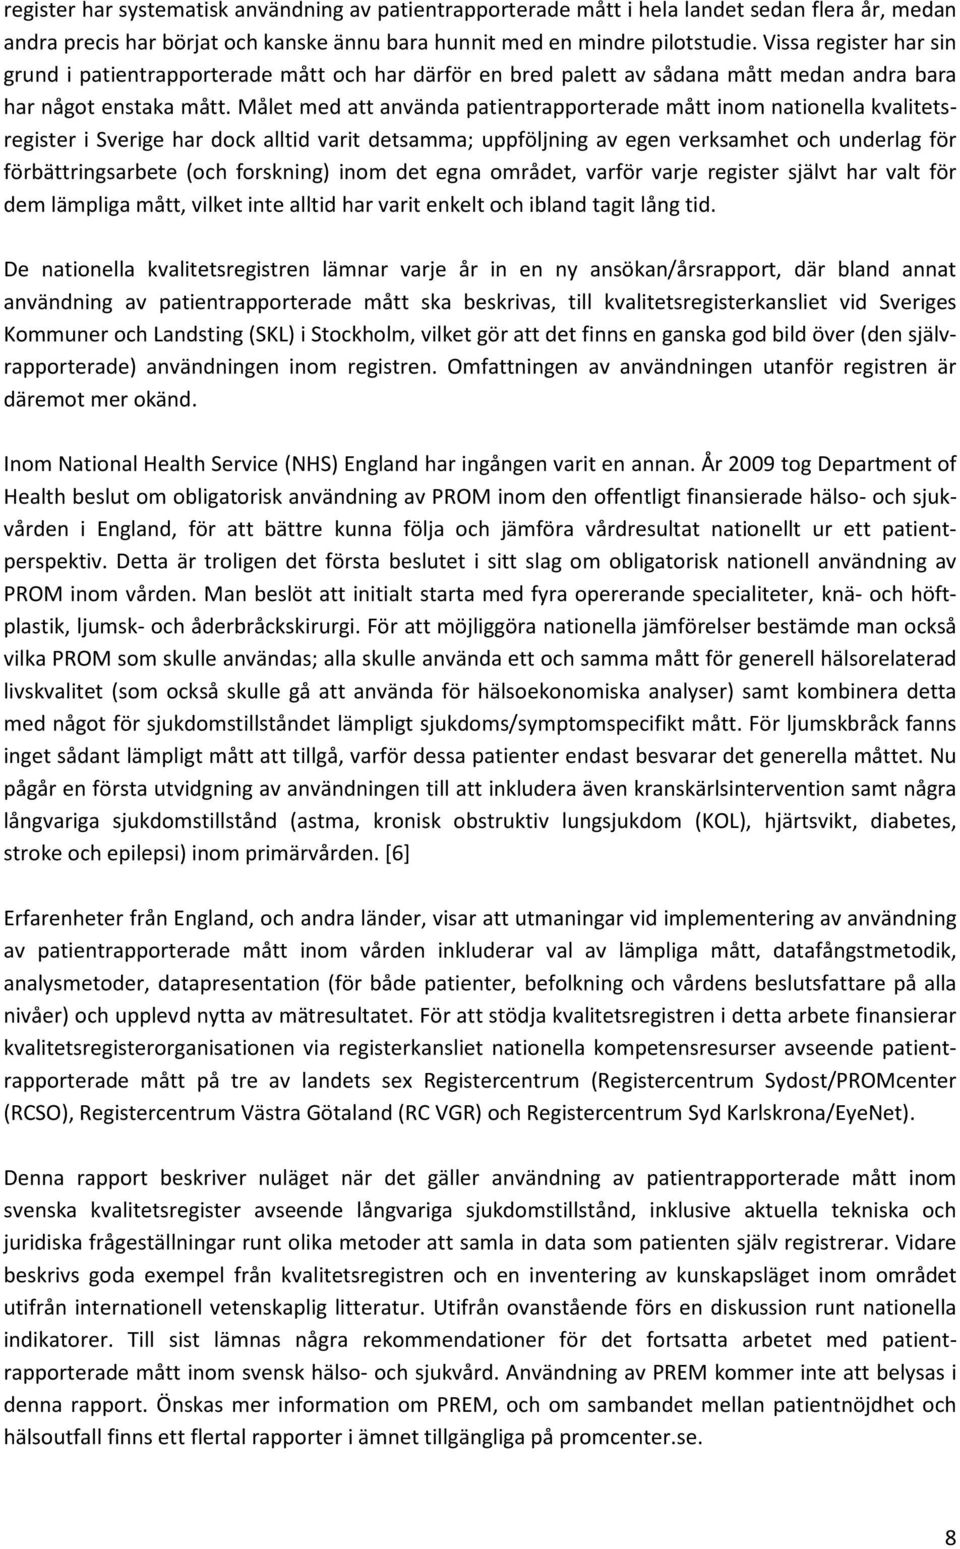 Målet med att använda patientrapporterade mått inom nationella kvalitetsregister i Sverige har dock alltid varit detsamma; uppföljning av egen verksamhet och underlag för förbättringsarbete (och